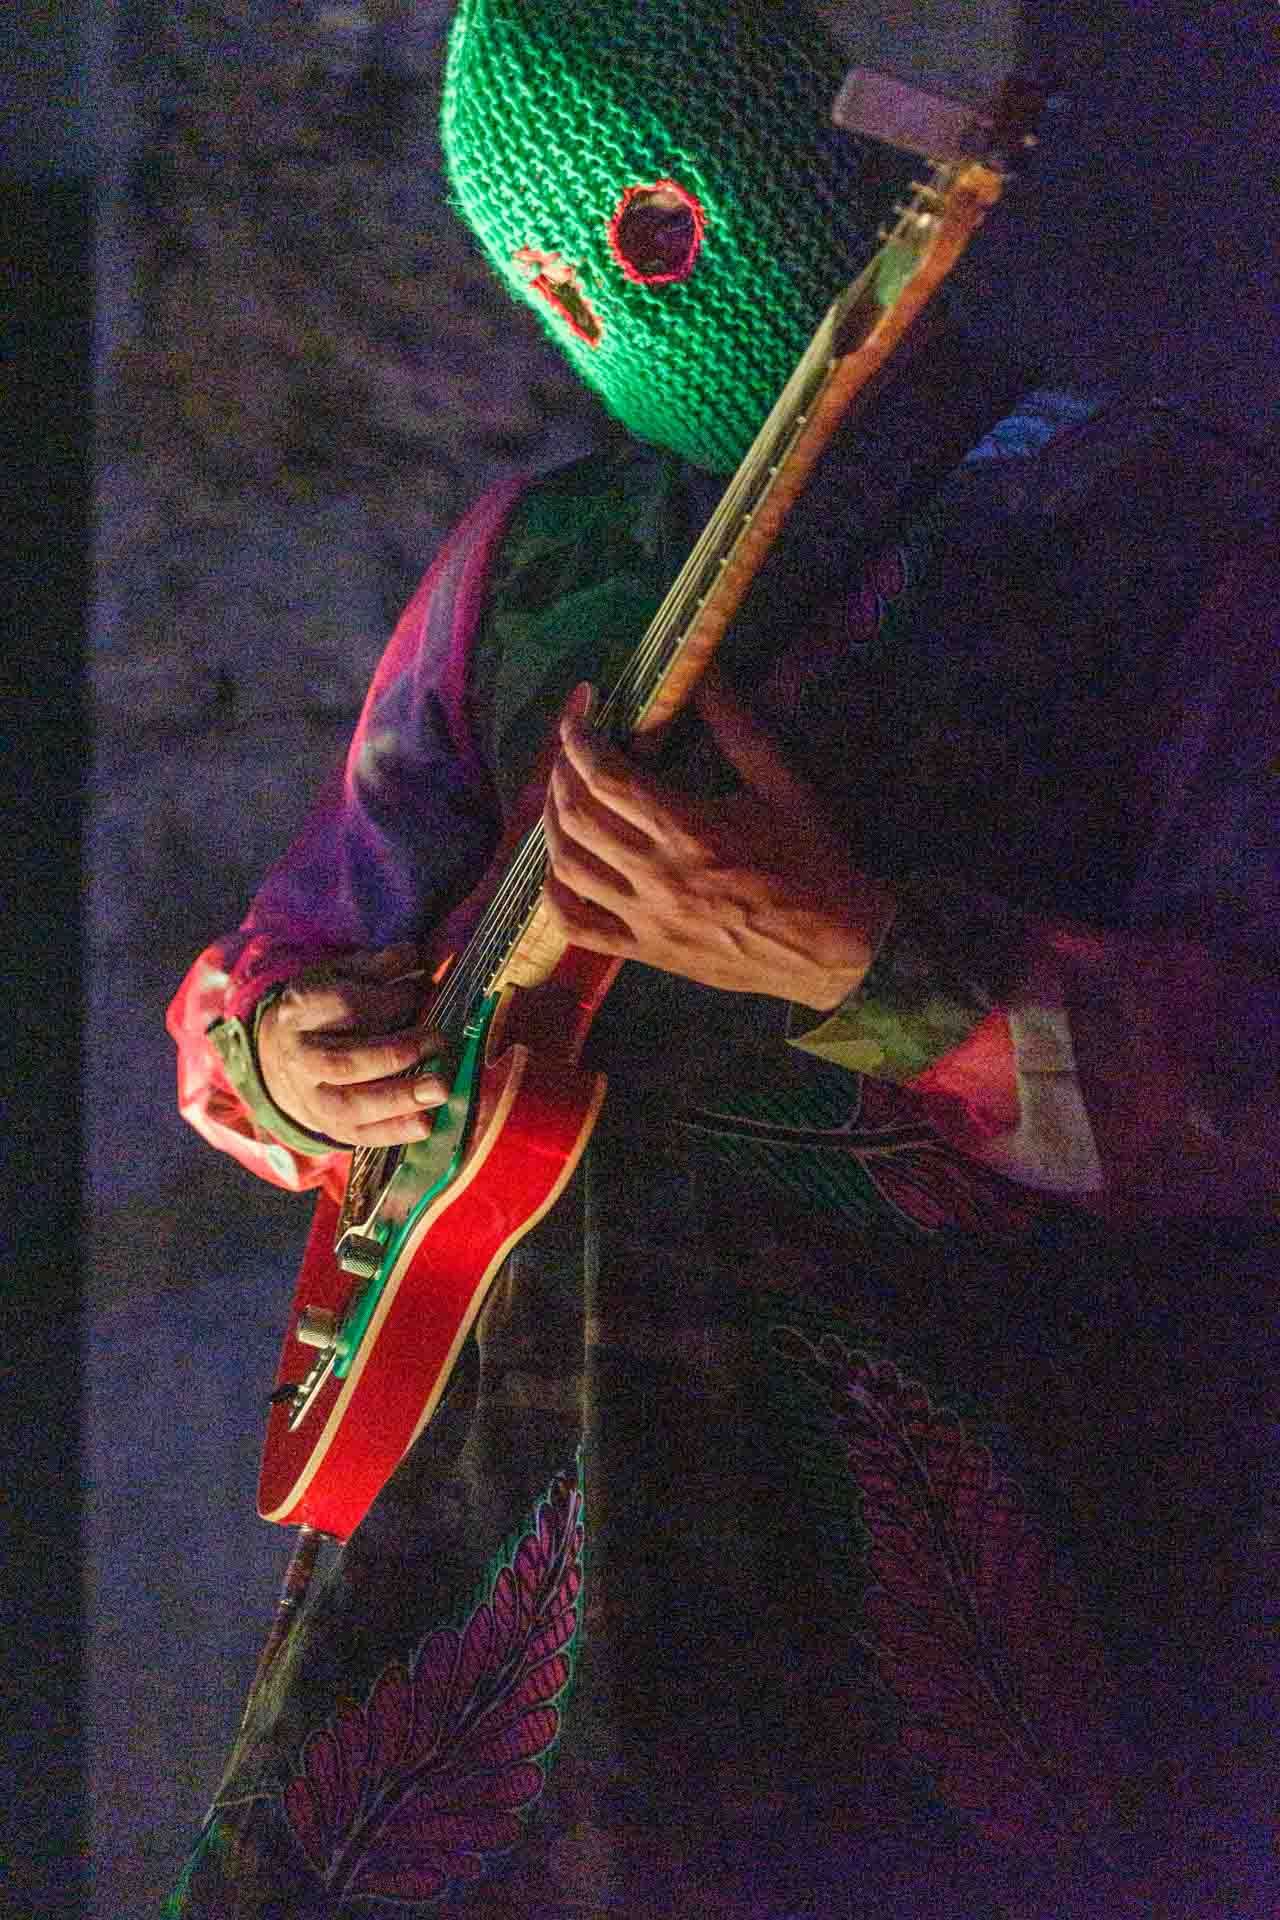 Gitarist met neon groene bivakmuts speelt op een oranje gitaar